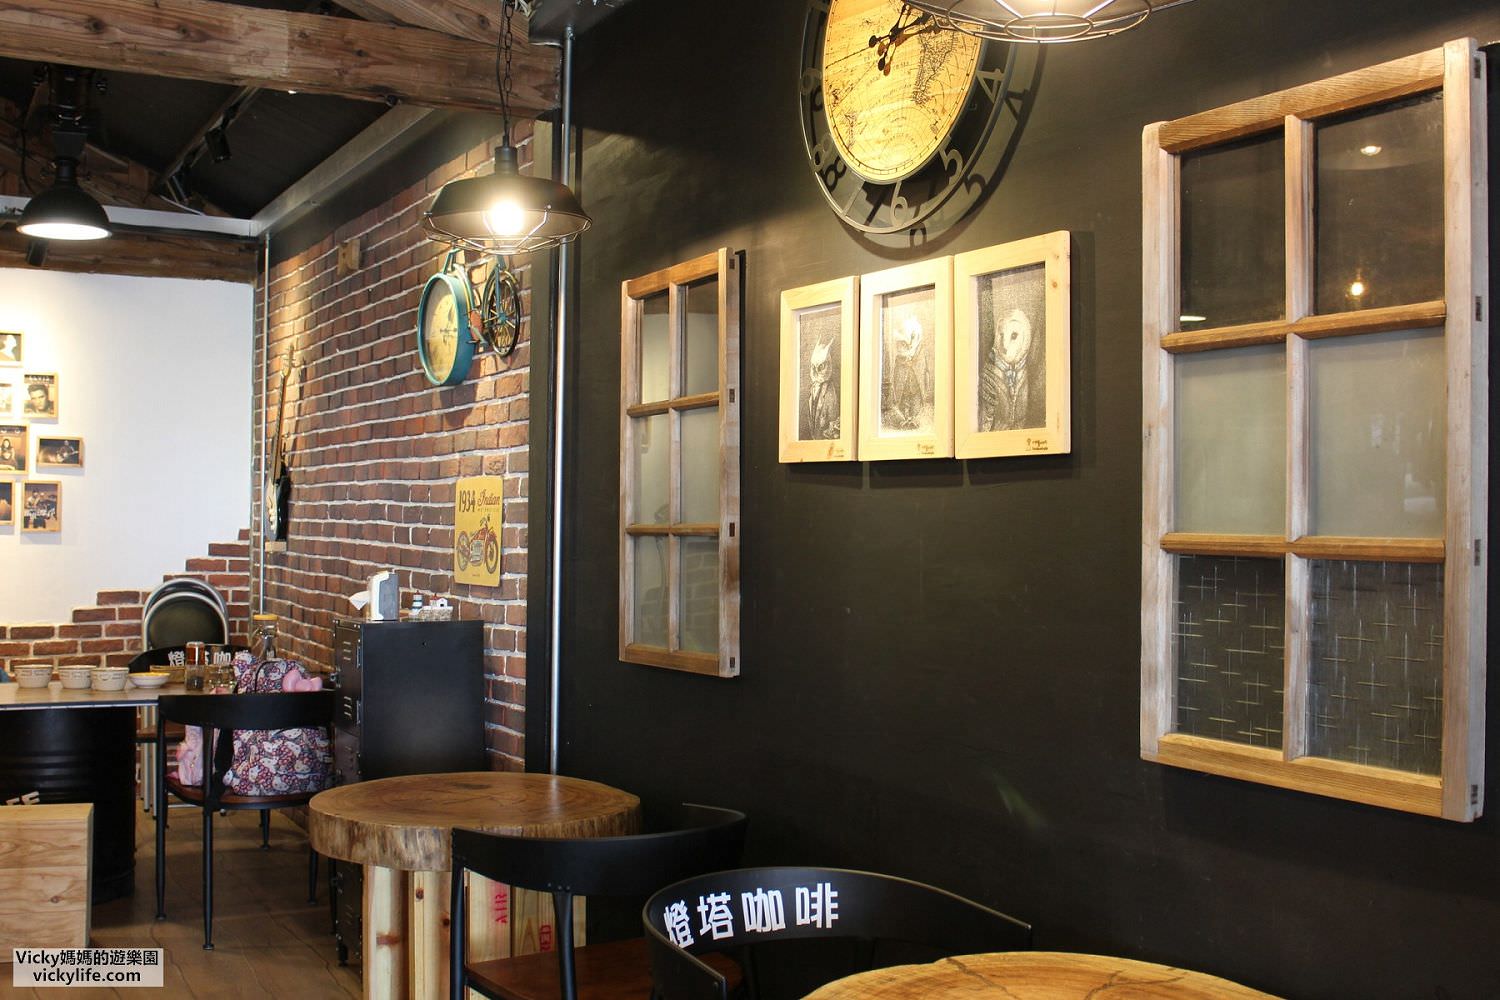 台南美食︱安定魔法燈塔咖啡館：真食物、好氛圍，推薦給大家